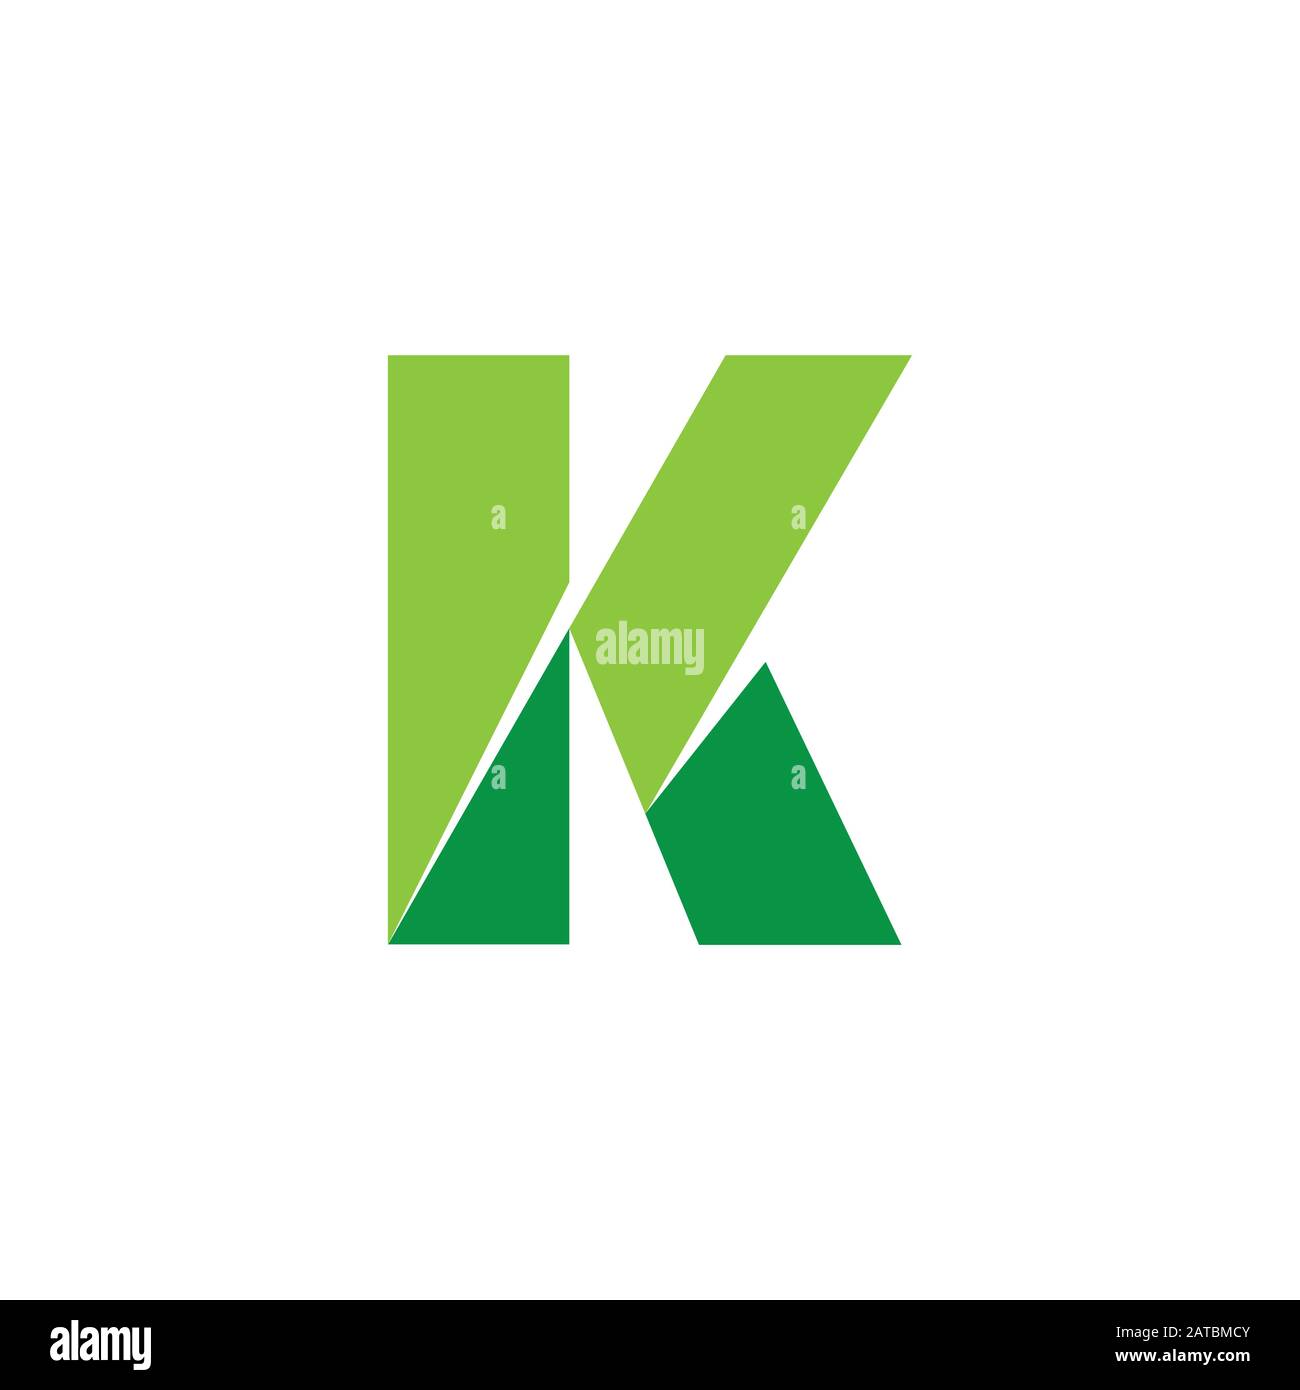 abstarct letter mk green mountain logo vector Stock Vector Image & Art ...